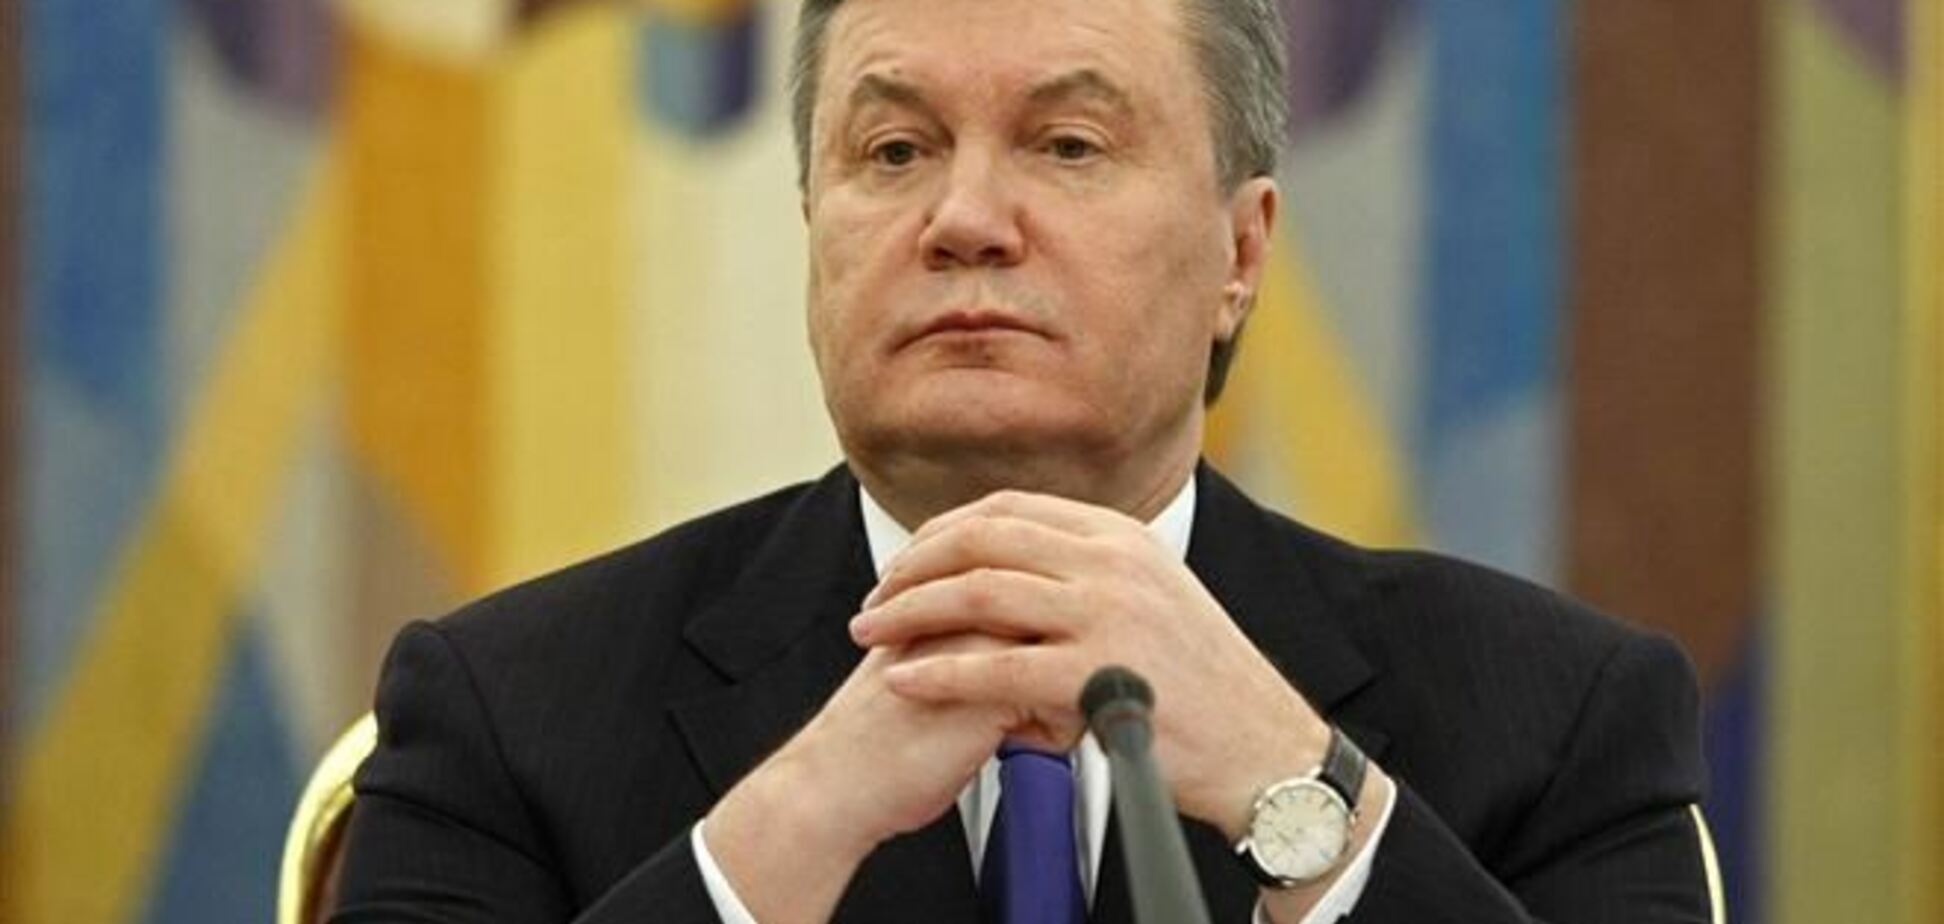 Юрист пояснил, почему Януковичу 'не светит' Гаагский трибунал